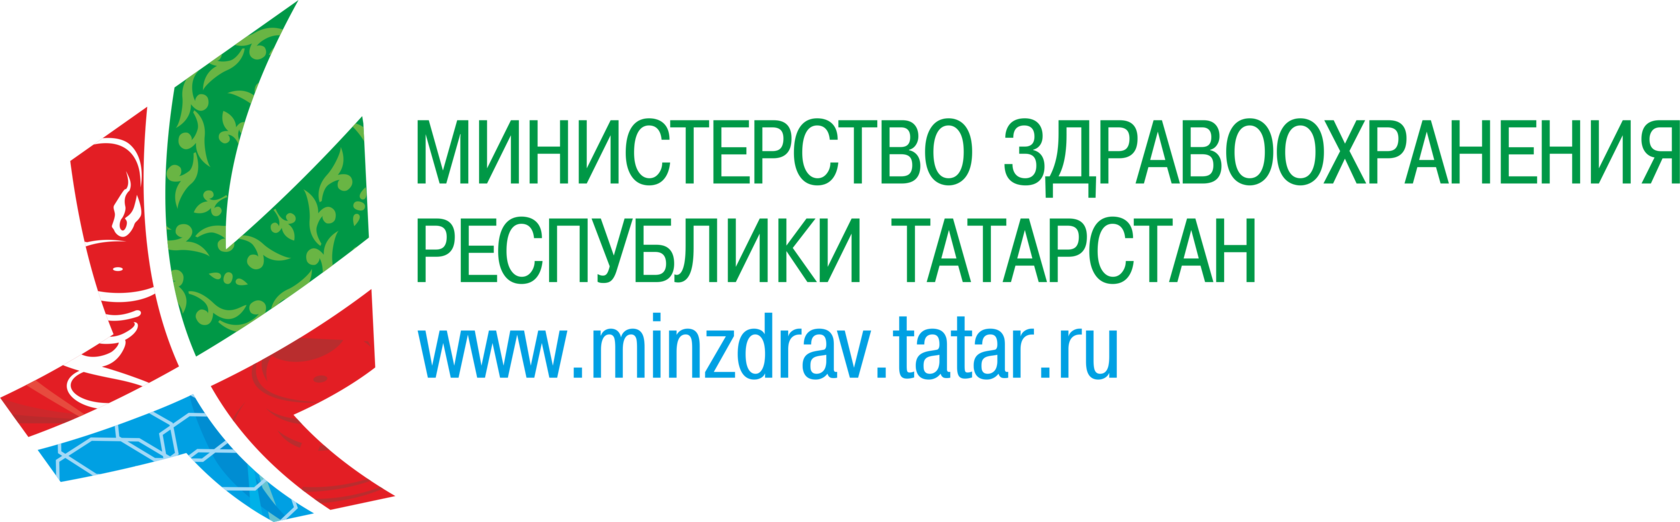 Https stream minzdrav gov ru